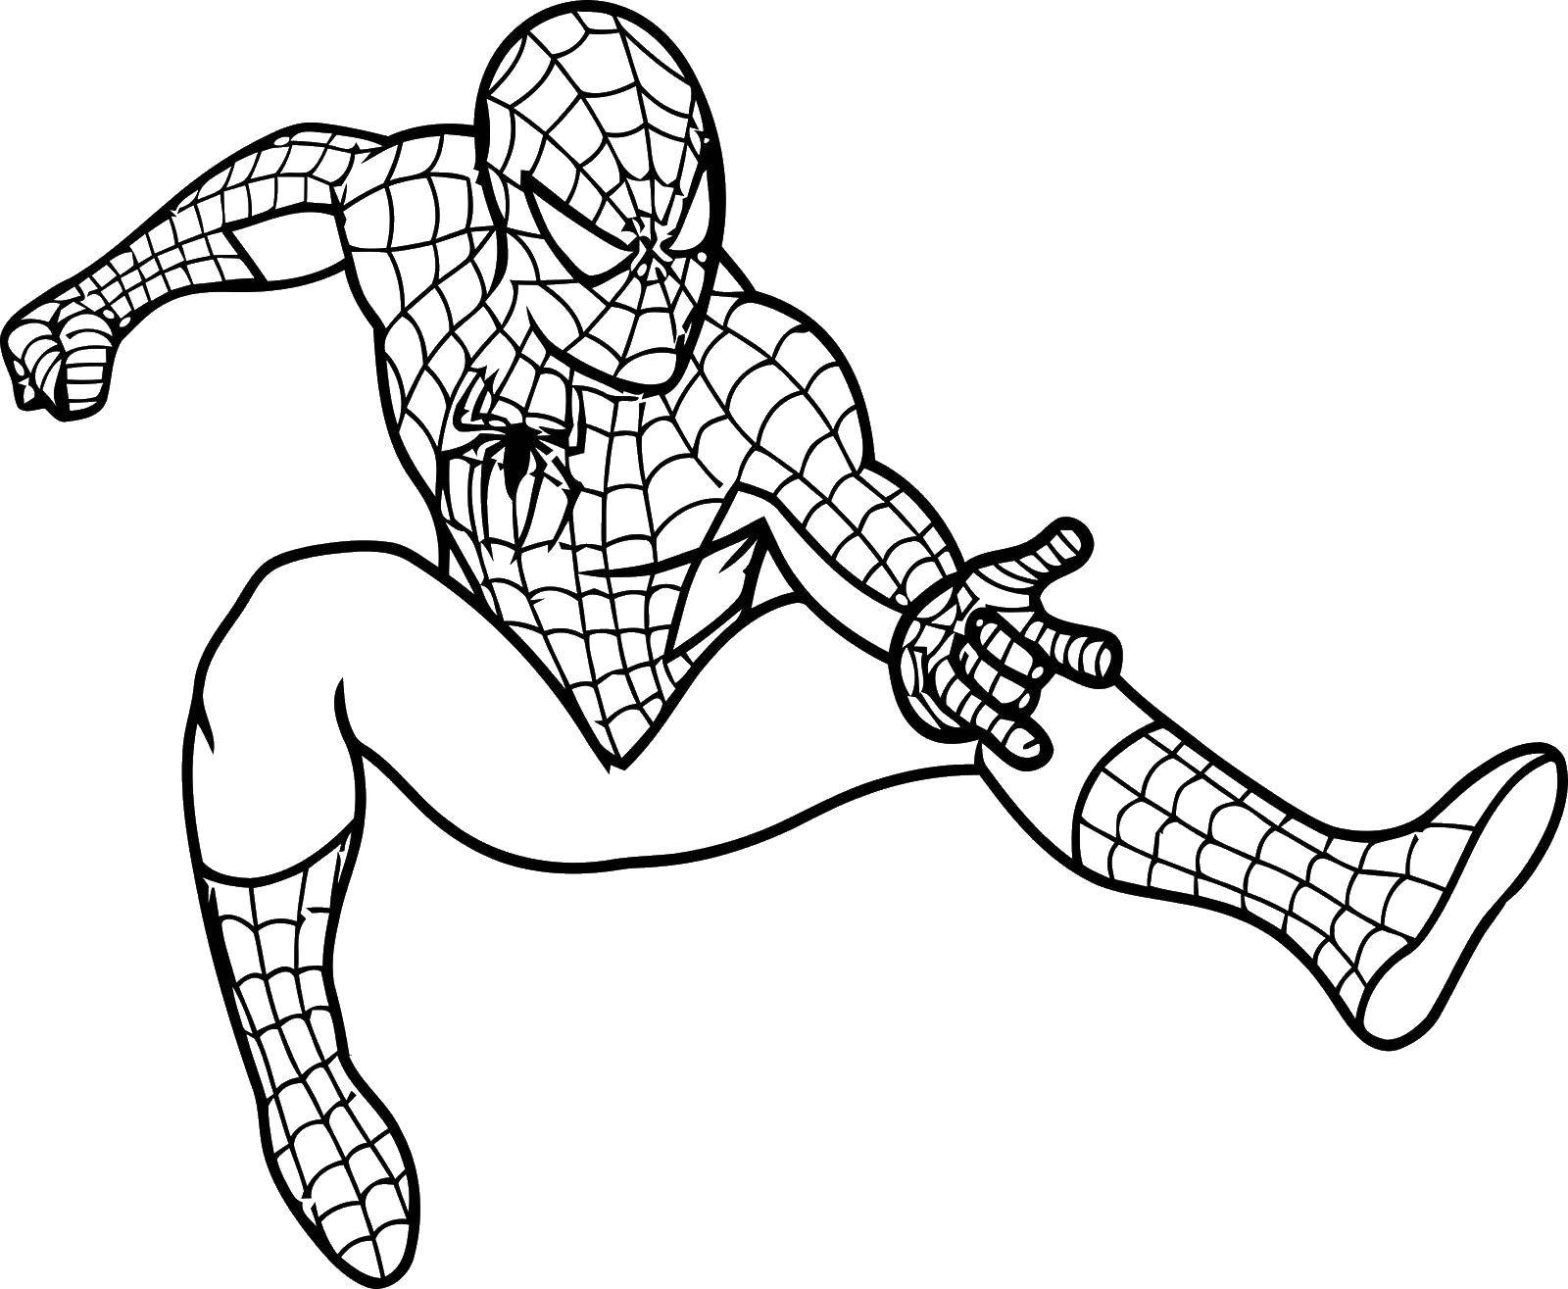 Раскраска Человек-паук для детей (Спайдермен)